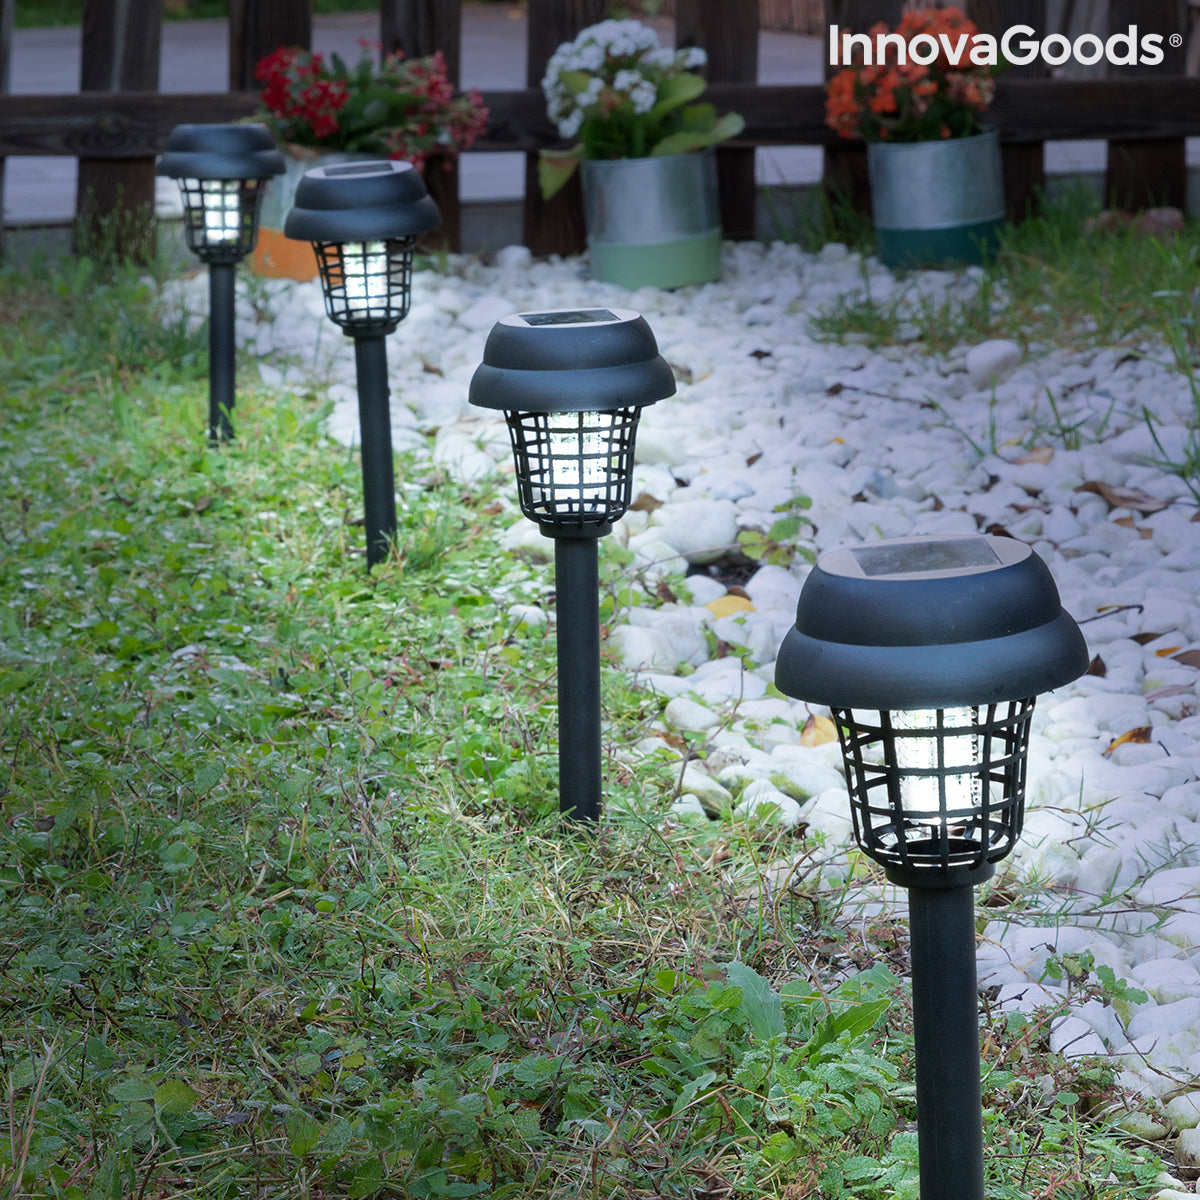 Zabijanie komarów słonecznych lampy ogrodowej Garlam Innovagoods